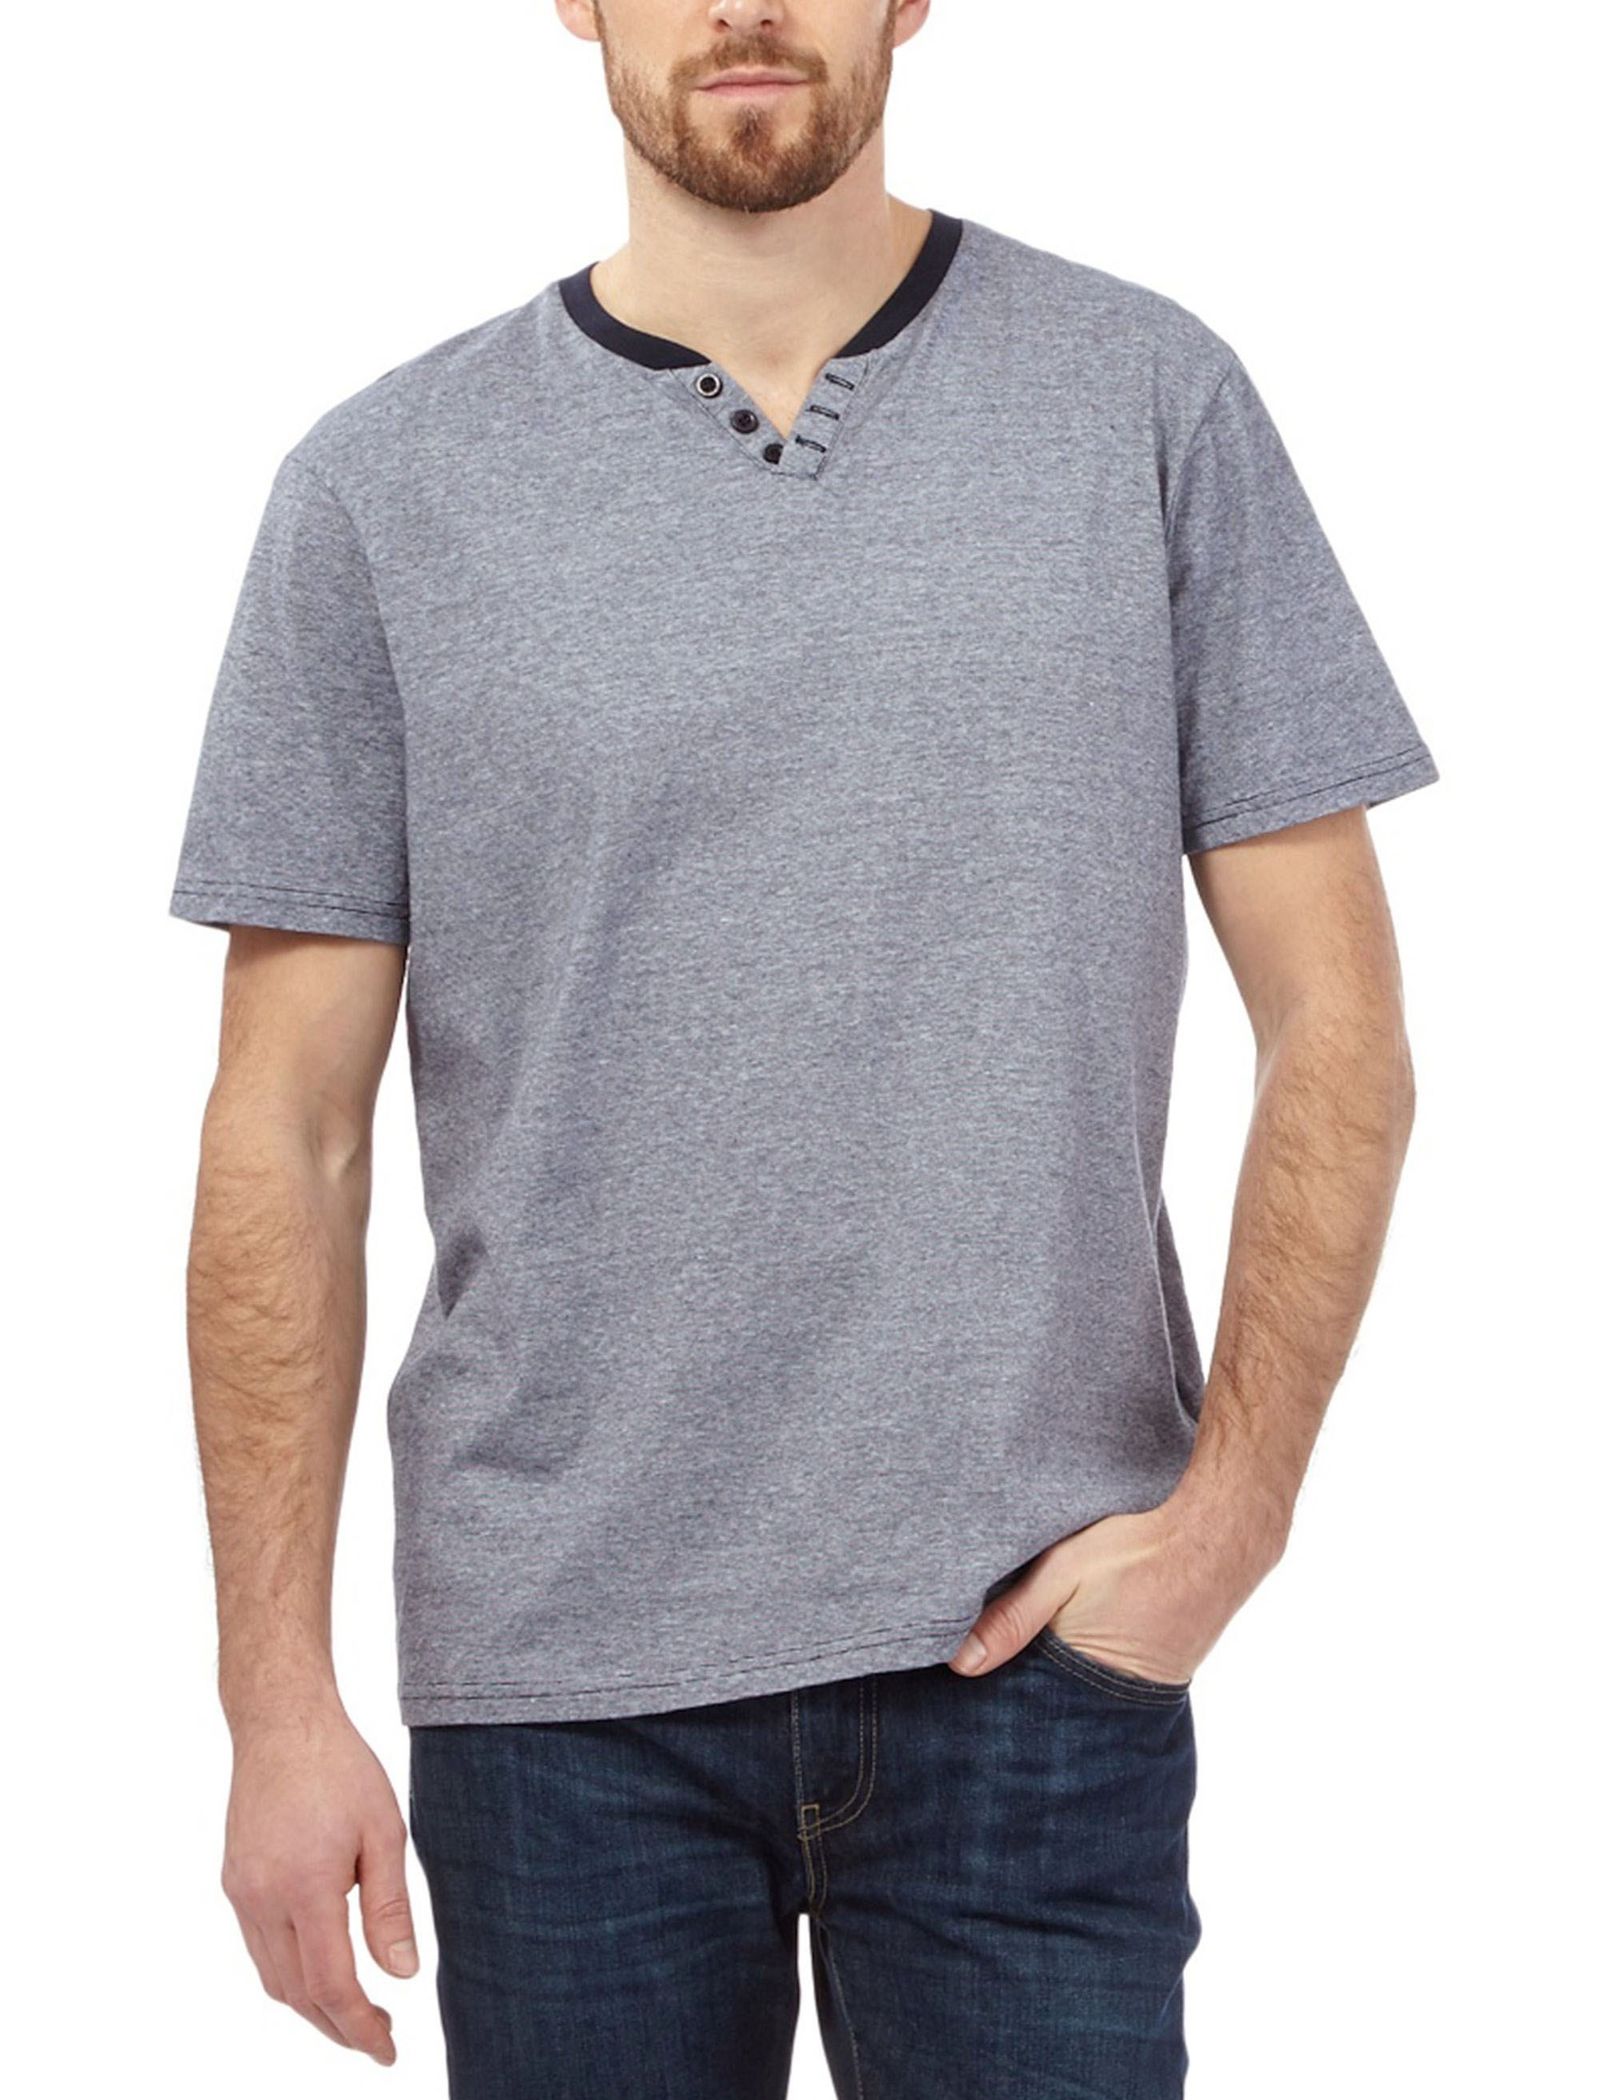 تی شرت نخی مردانه - مین نیو اینگلند - طوسي - 1